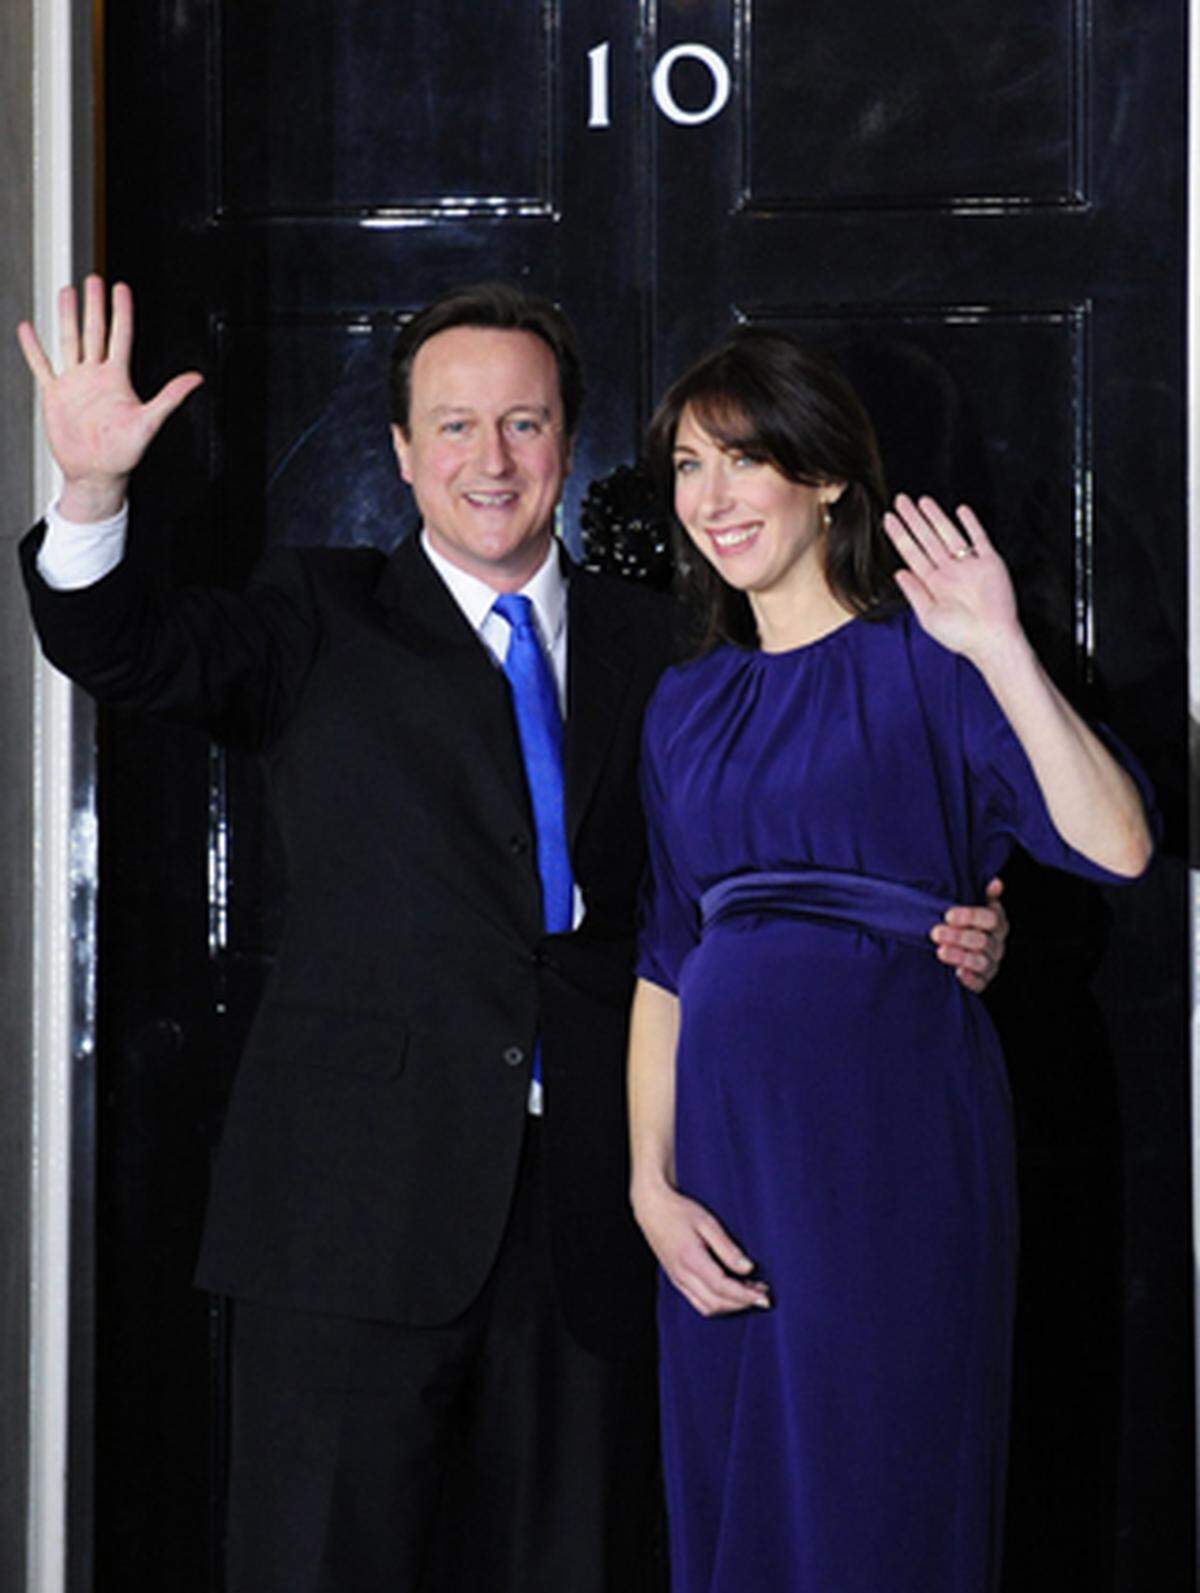 Großbritannien hat einen neuen Premierminister - und eine neue First Lady: Samantha Cameron, die Ehefrau von Tory-Chef David Cameron. "Sexy Sam" oder "Sam Cam" ist kreativ, selbstständig und hat Klasse. Cameron nennt die Die Kreativdirektorin eines Luxus-Lederwarengeschäfts seine Geheimwaffe. "Sie stellt mich komplett in den Schatten", bekannte er.